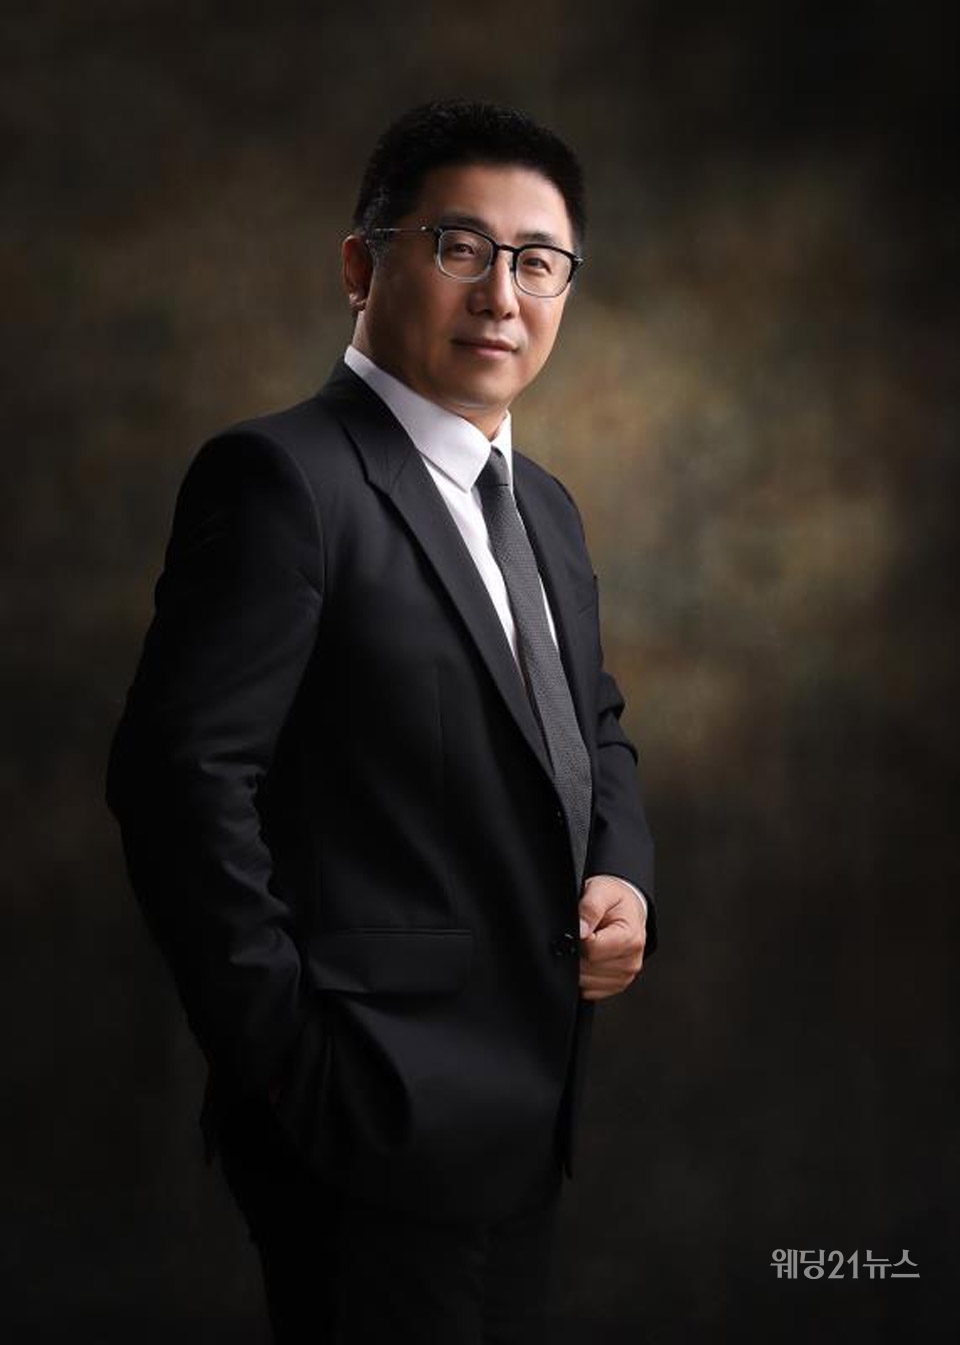 사진 : 유유안 의 회장이자 유유안 주얼리 앤 패션 그룹의 CEO쯔엔 황(Zhen Huang)